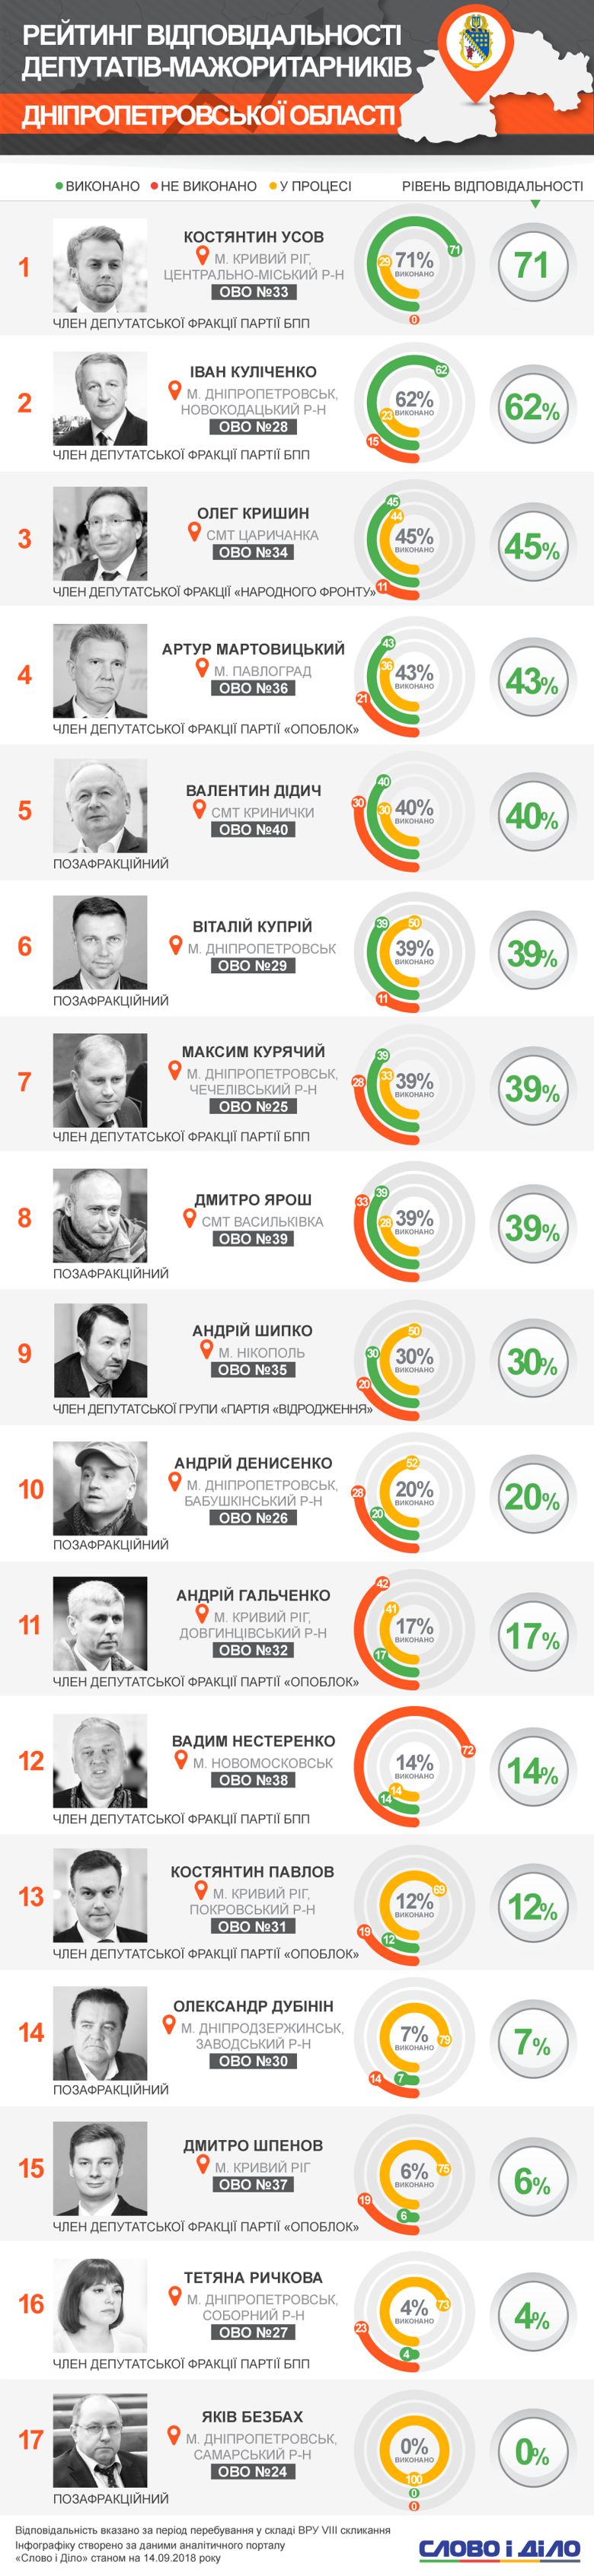 Усов, Куличенко, Крышин выполнили больше всего обещаний, а Дубинин, Шпенов, Рычкова и Безбах не справились даже с 10% обязательств.